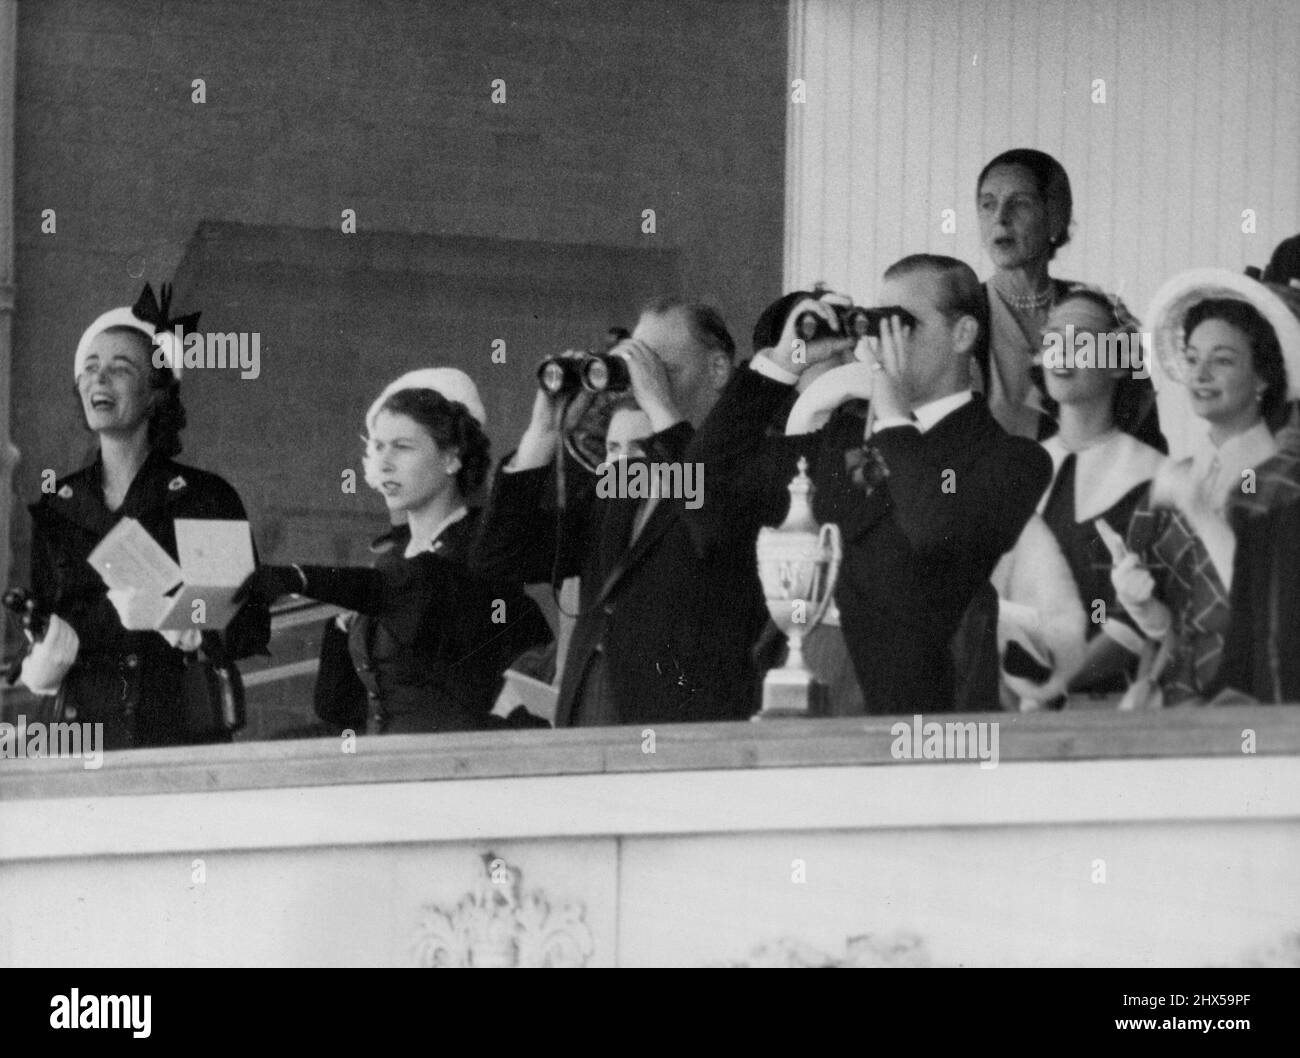 Jumelles dans la Royal Box -- comme la Reine pointe (deuxième à partir de la gauche), les Ducs de Gloucester (centre) et d'Édimbourg suivent la course avec des jumelles de la Royal Box à Ascot, Berkshire, cet après-midi, le 18 juin, le deuxième jour de la rencontre de Royal Ascot. Les autres éléments de la boîte ne sont pas identifiés. La Reine est vêtue de noir et porte un chapeau blanc. 17 juin 1952. (Photo par BIPPA). Banque D'Images